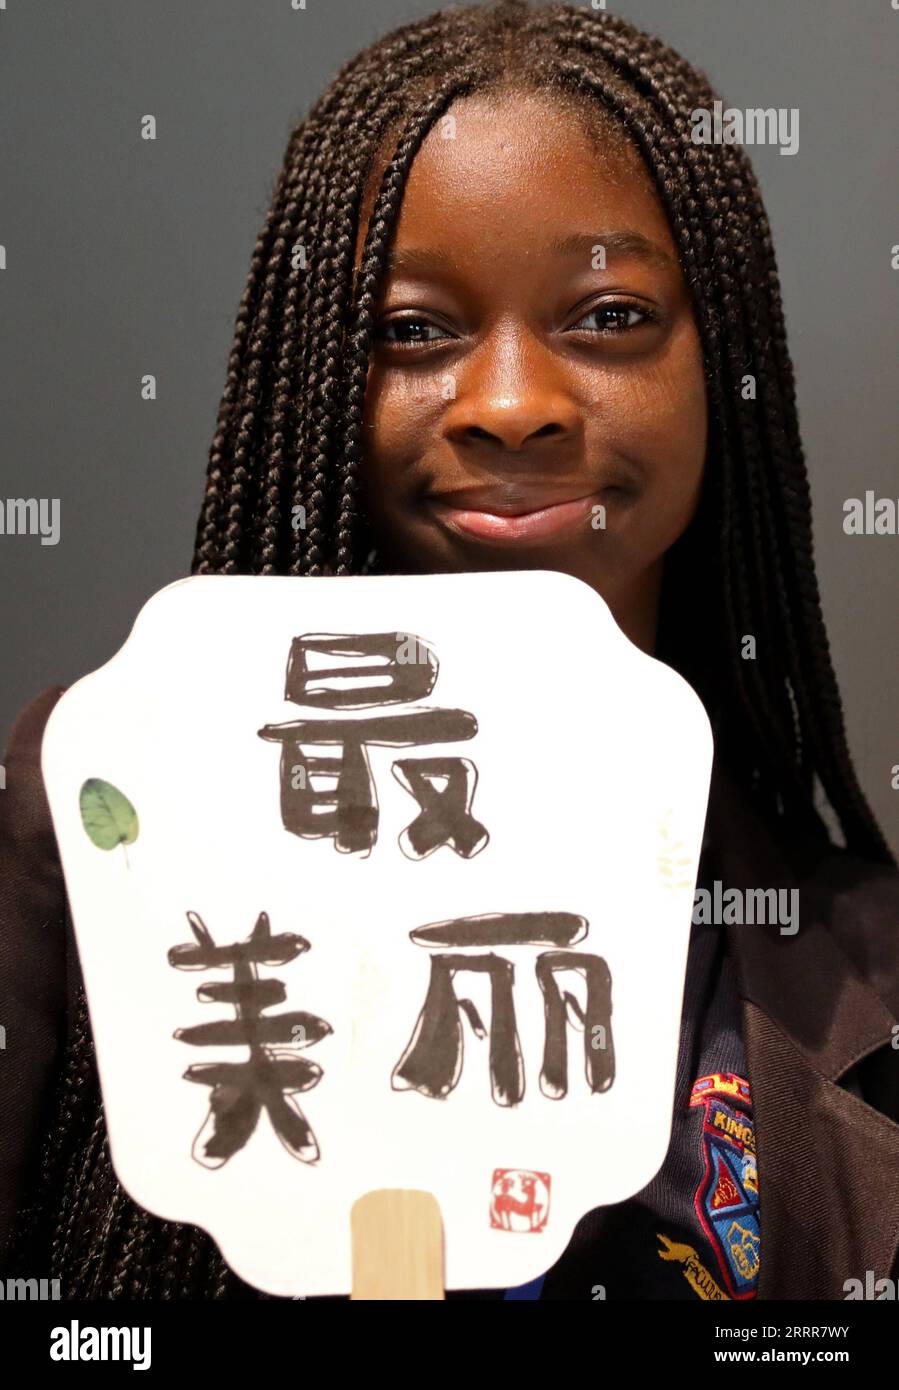 230512 -- LONDON, 12. Mai 2023 -- Eine Studentin zeigt ihre Kalligraphie mit den chinesischen Schriftzeichen Zui Mei Li , was die schönste auf Englisch bedeutet, in London, Großbritannien, 11. Mai 2023. Mehr als 100 britische Sekundarschüler und Lehrer nahmen am Donnerstag an einer Veranstaltung zum Internationalen Chinesischen Sprachtag Teil. BRITANNIEN-LONDON-CHINESISCHE SPRACHE TAG VERANSTALTUNG LIXYING PUBLICATIONXNOTXINXCHN Stockfoto